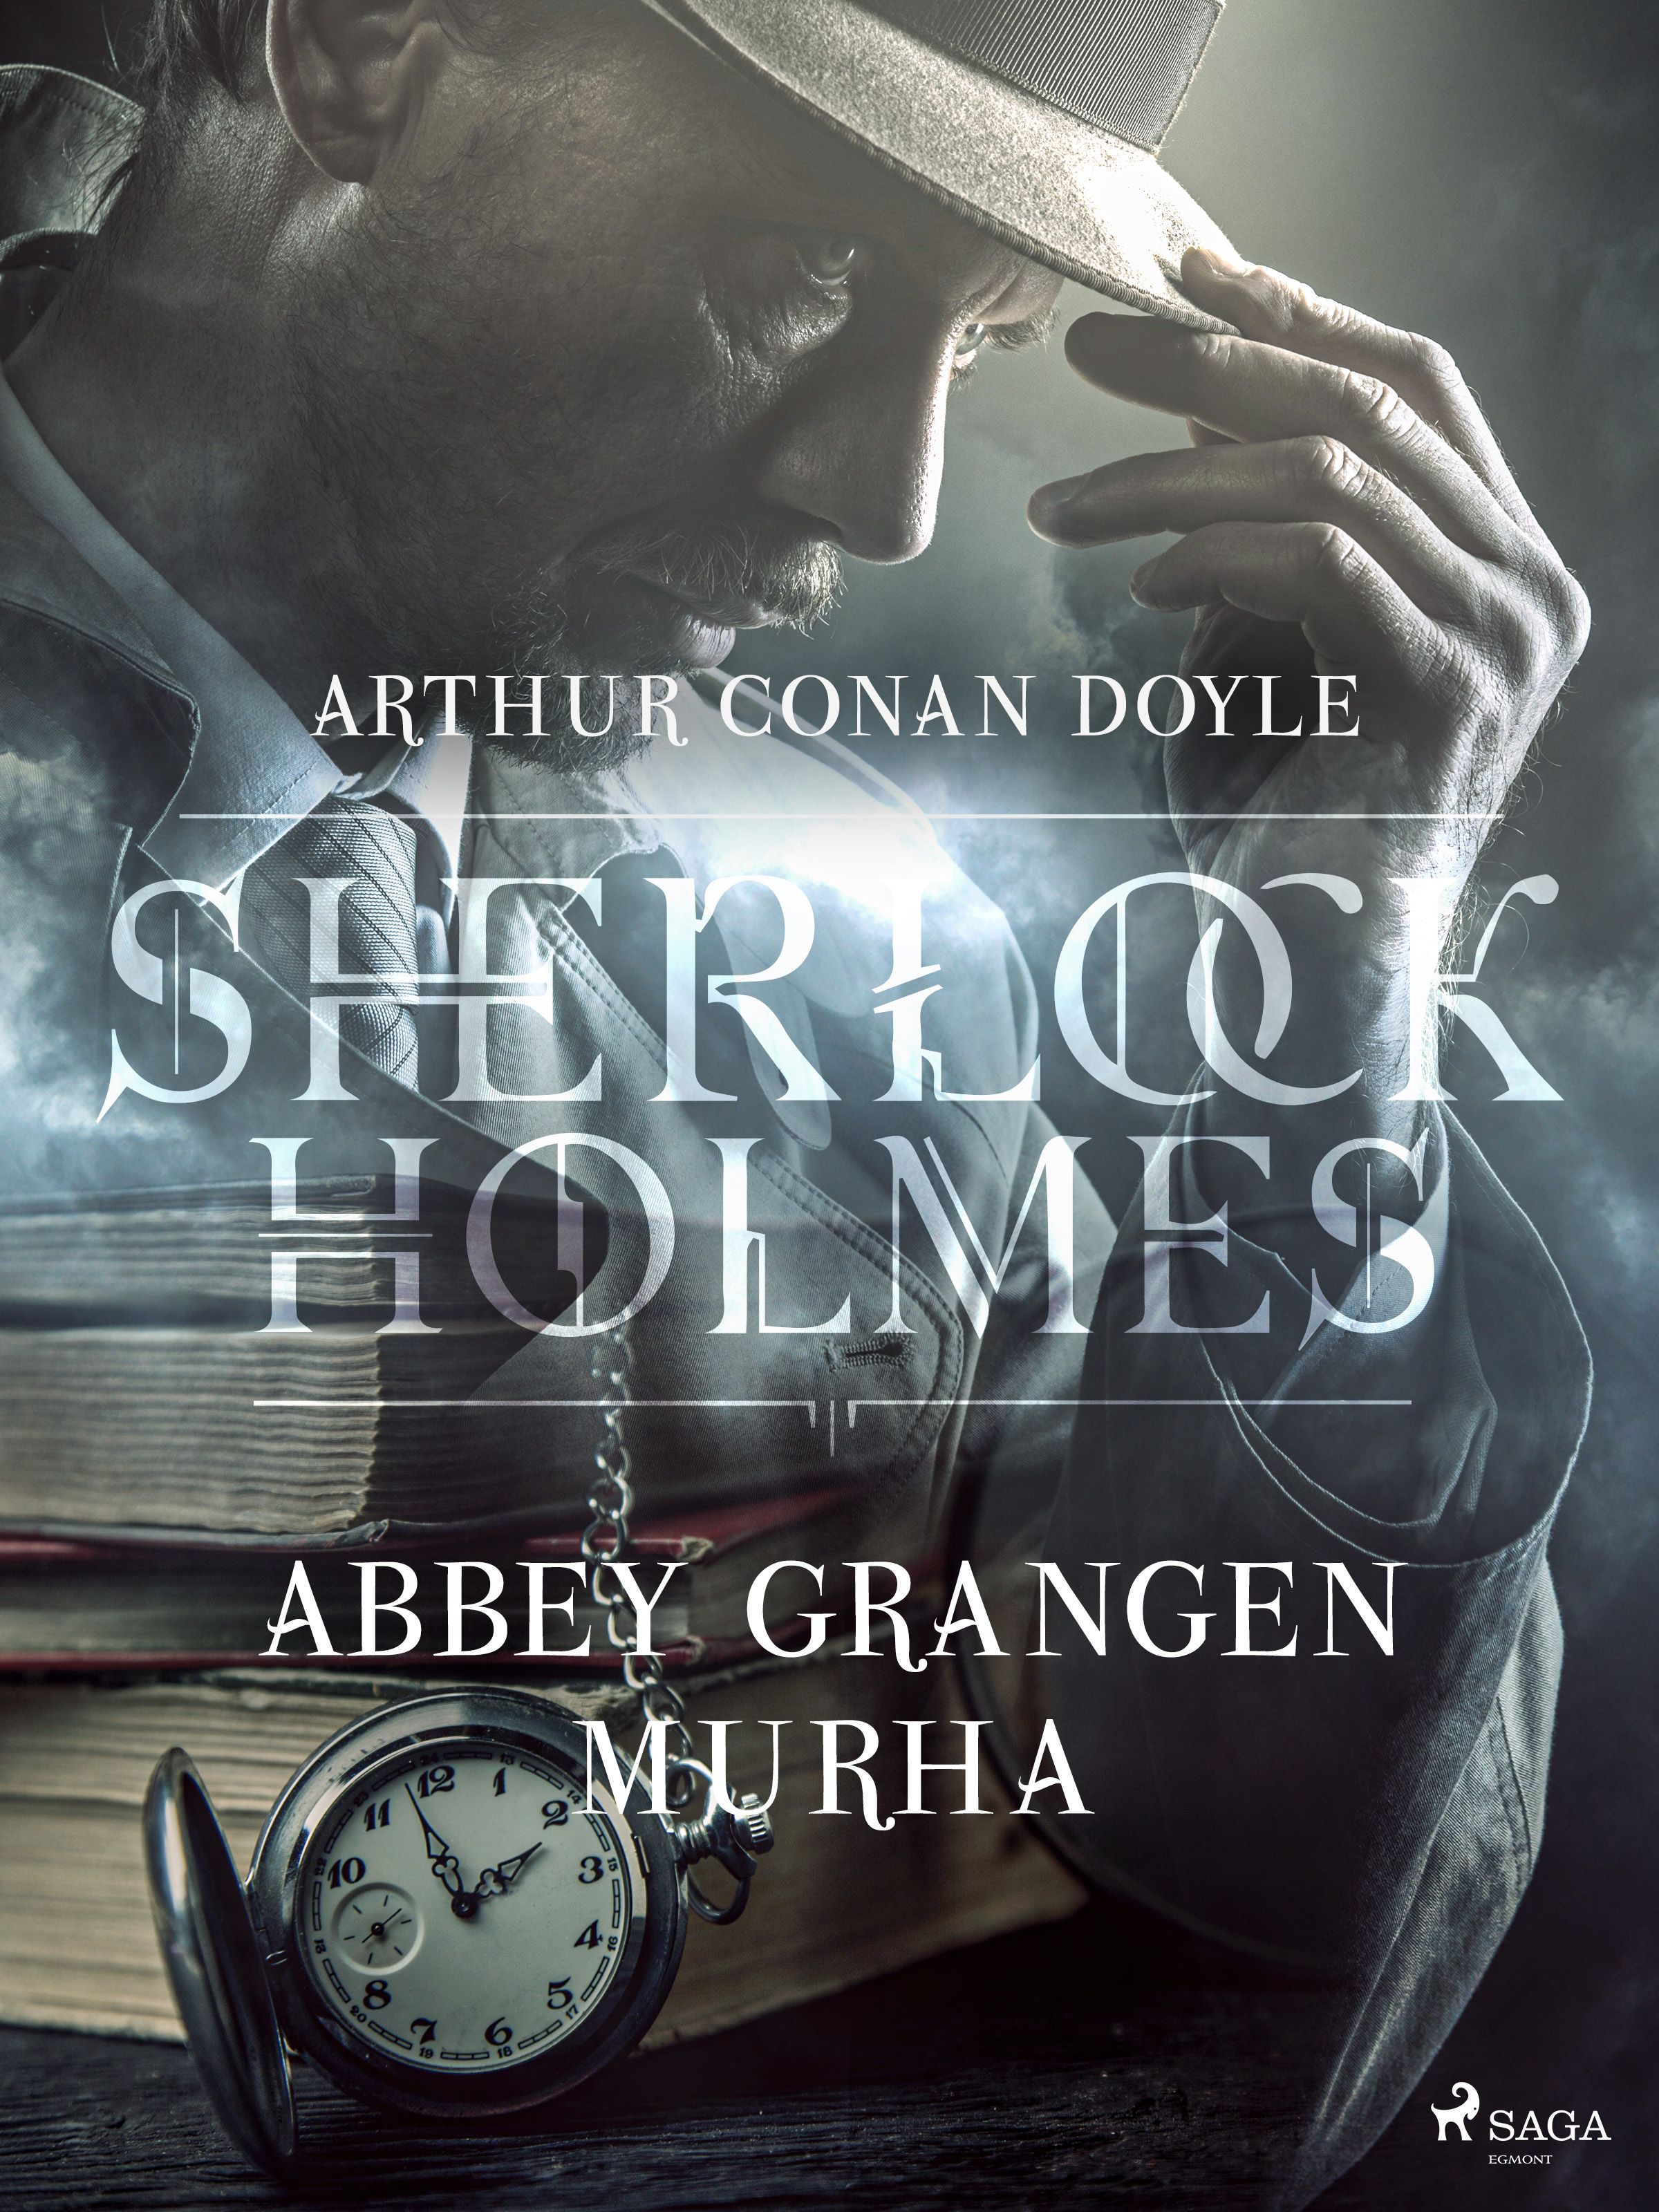 Abbey Grangen murha, e-bog af Arthur Conan Doyle